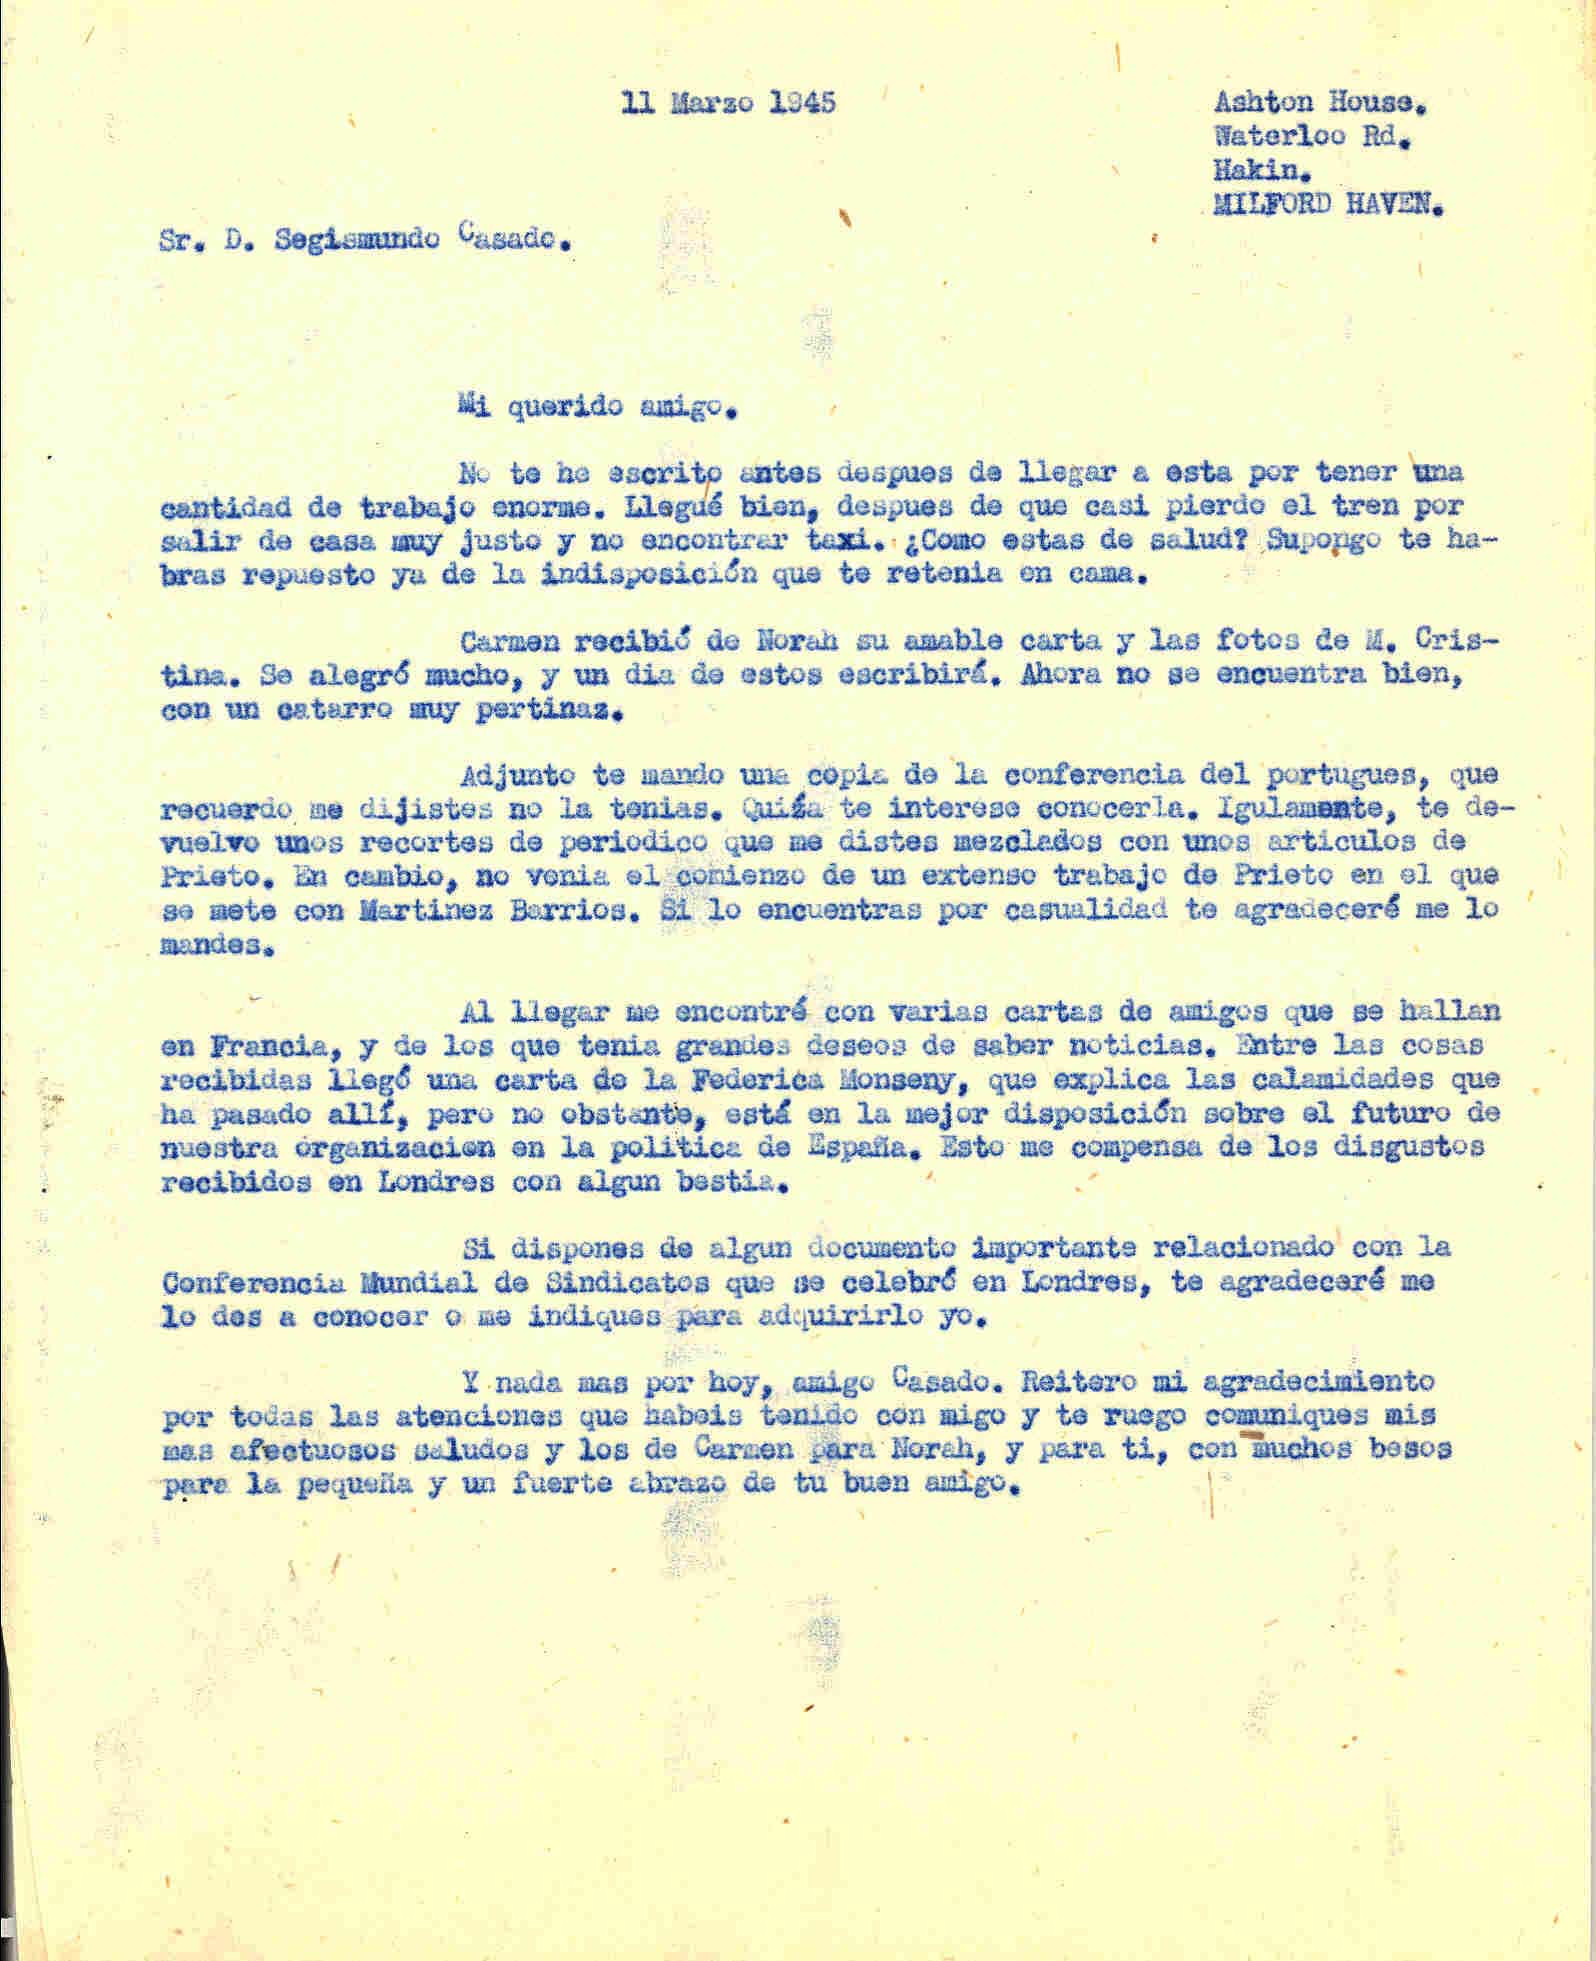 Carta a Segismundo Casado con la que pide algunos documentos; cuenta que al llegar de Londres recibió algunas cartas de gente como Federica Montseny.